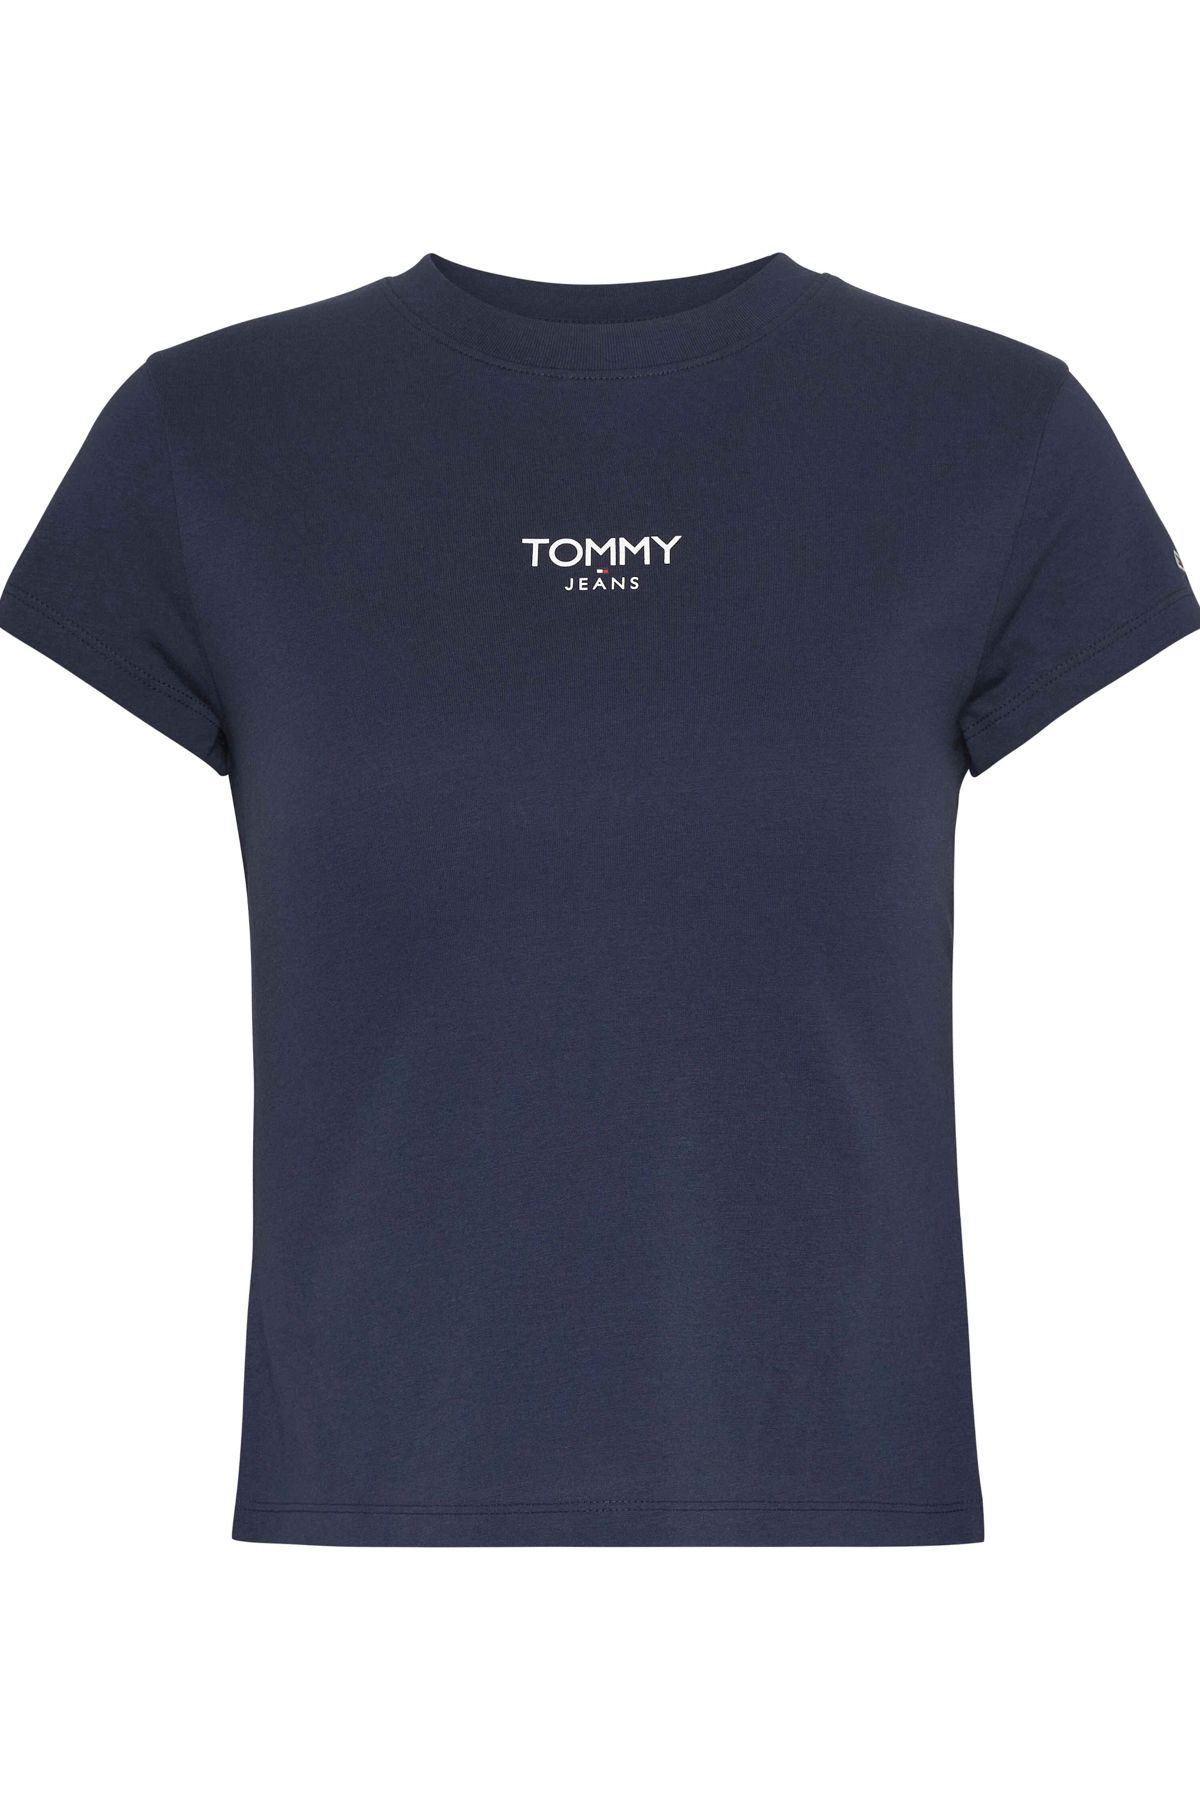 Tommy Hilfiger T-Shirt Damen / Mädchen Twilight Navy - Trendyol